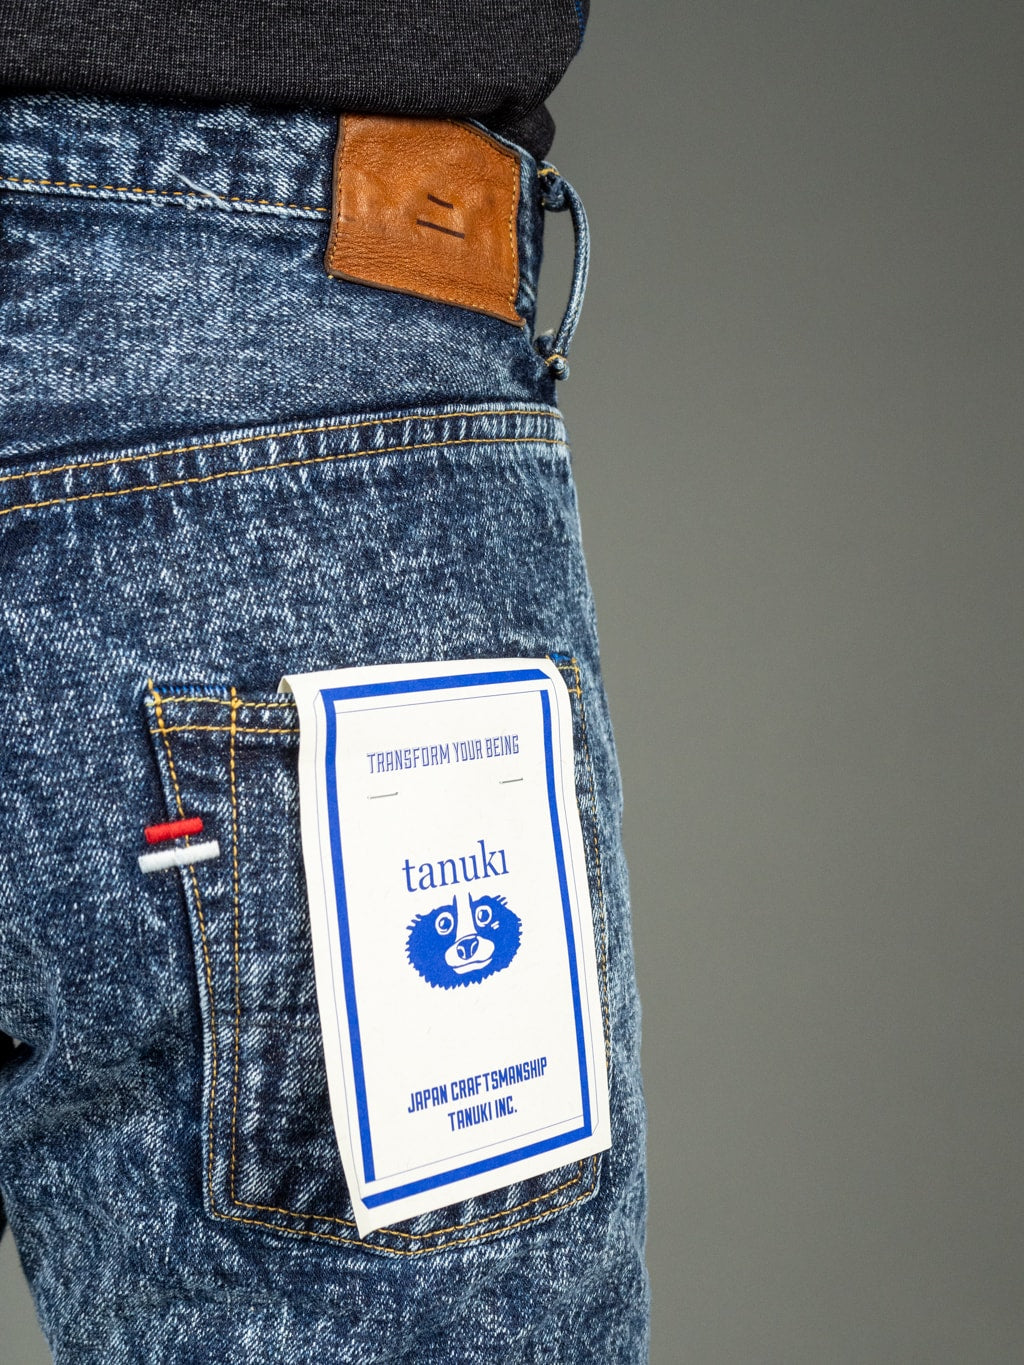 Tanuki Natural Acid Wash High Tapered Jeans Back Pocket